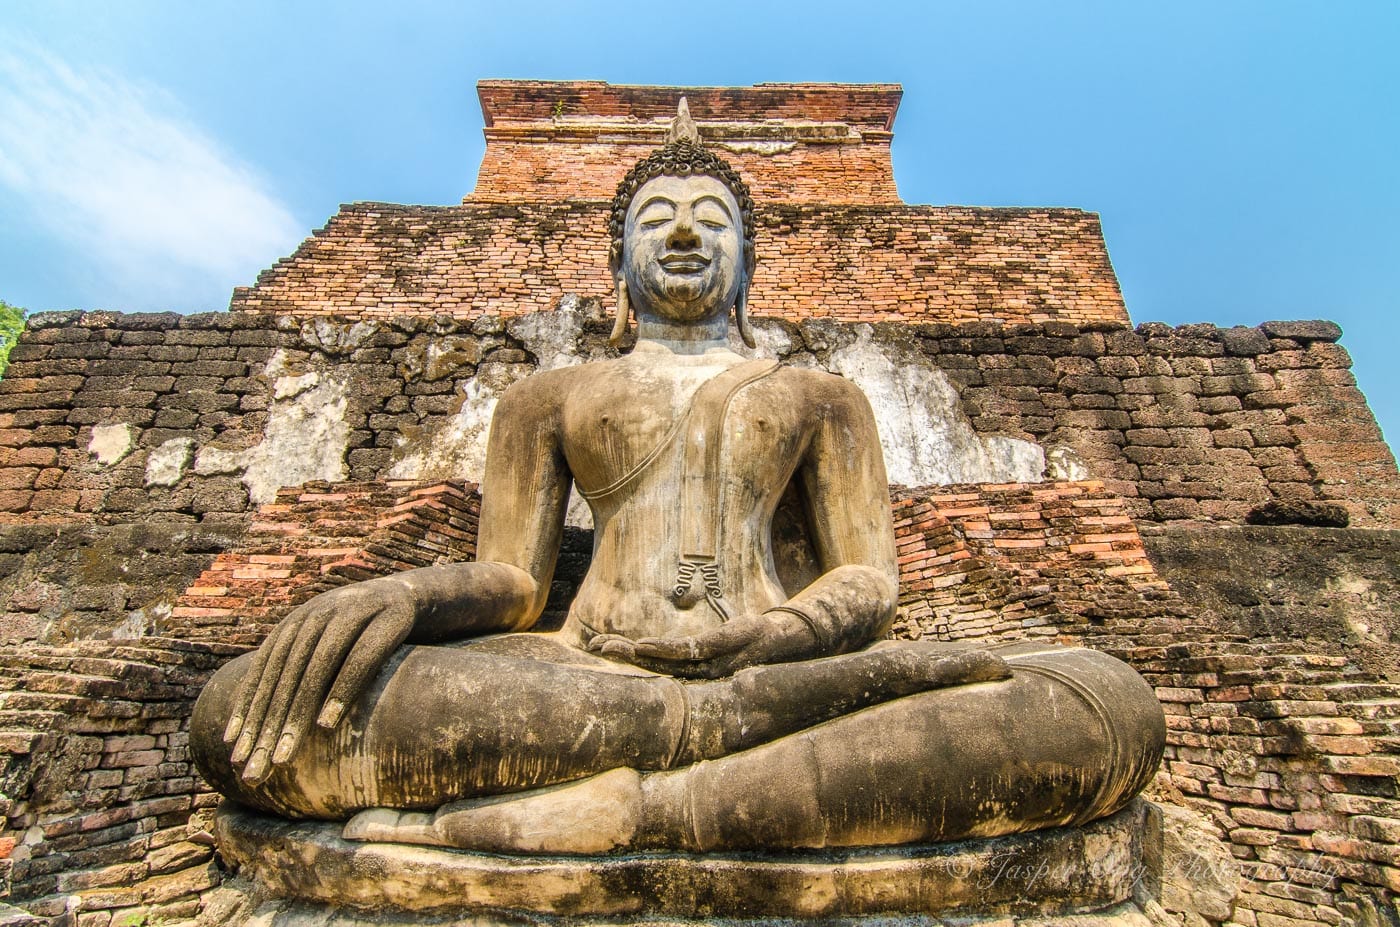 Seated Buddha at Wat Mahathat